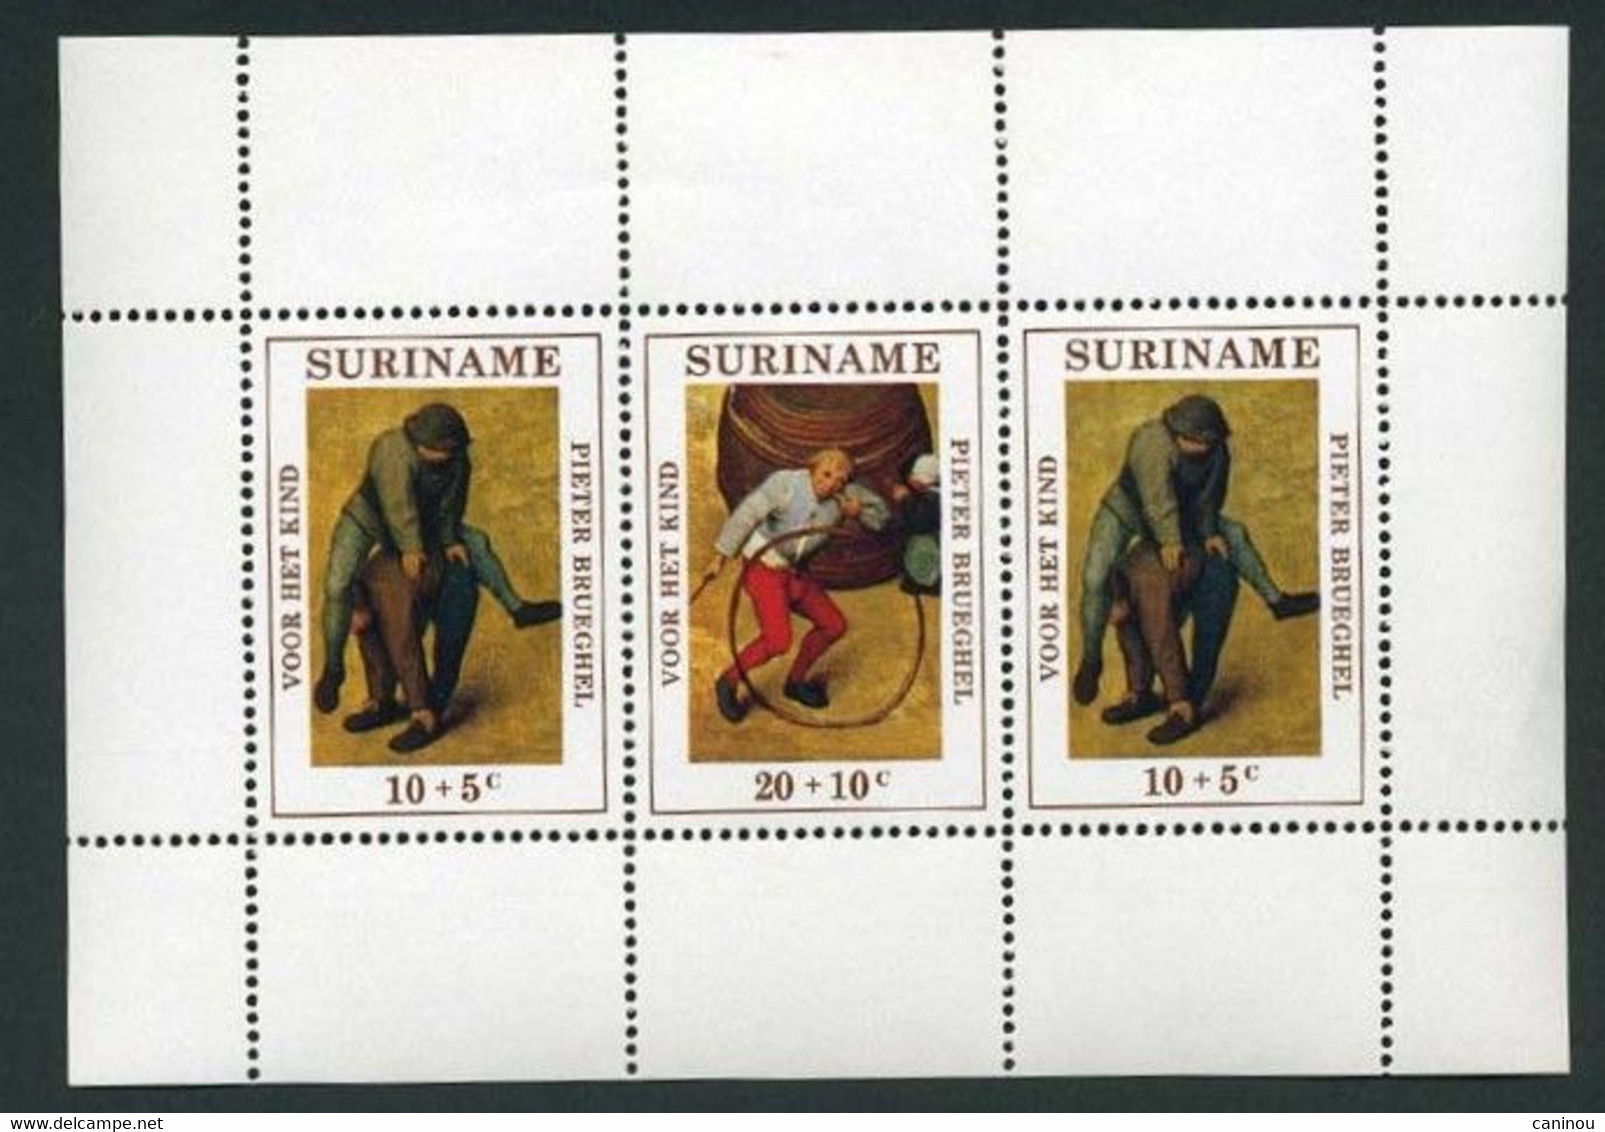 SURINAM BLOC Y&T BF 11 ENFANCE JEUX TABLEAUX PIETER BRUEGHEL 1971 NEUF SANS CHARNIERES - Suriname